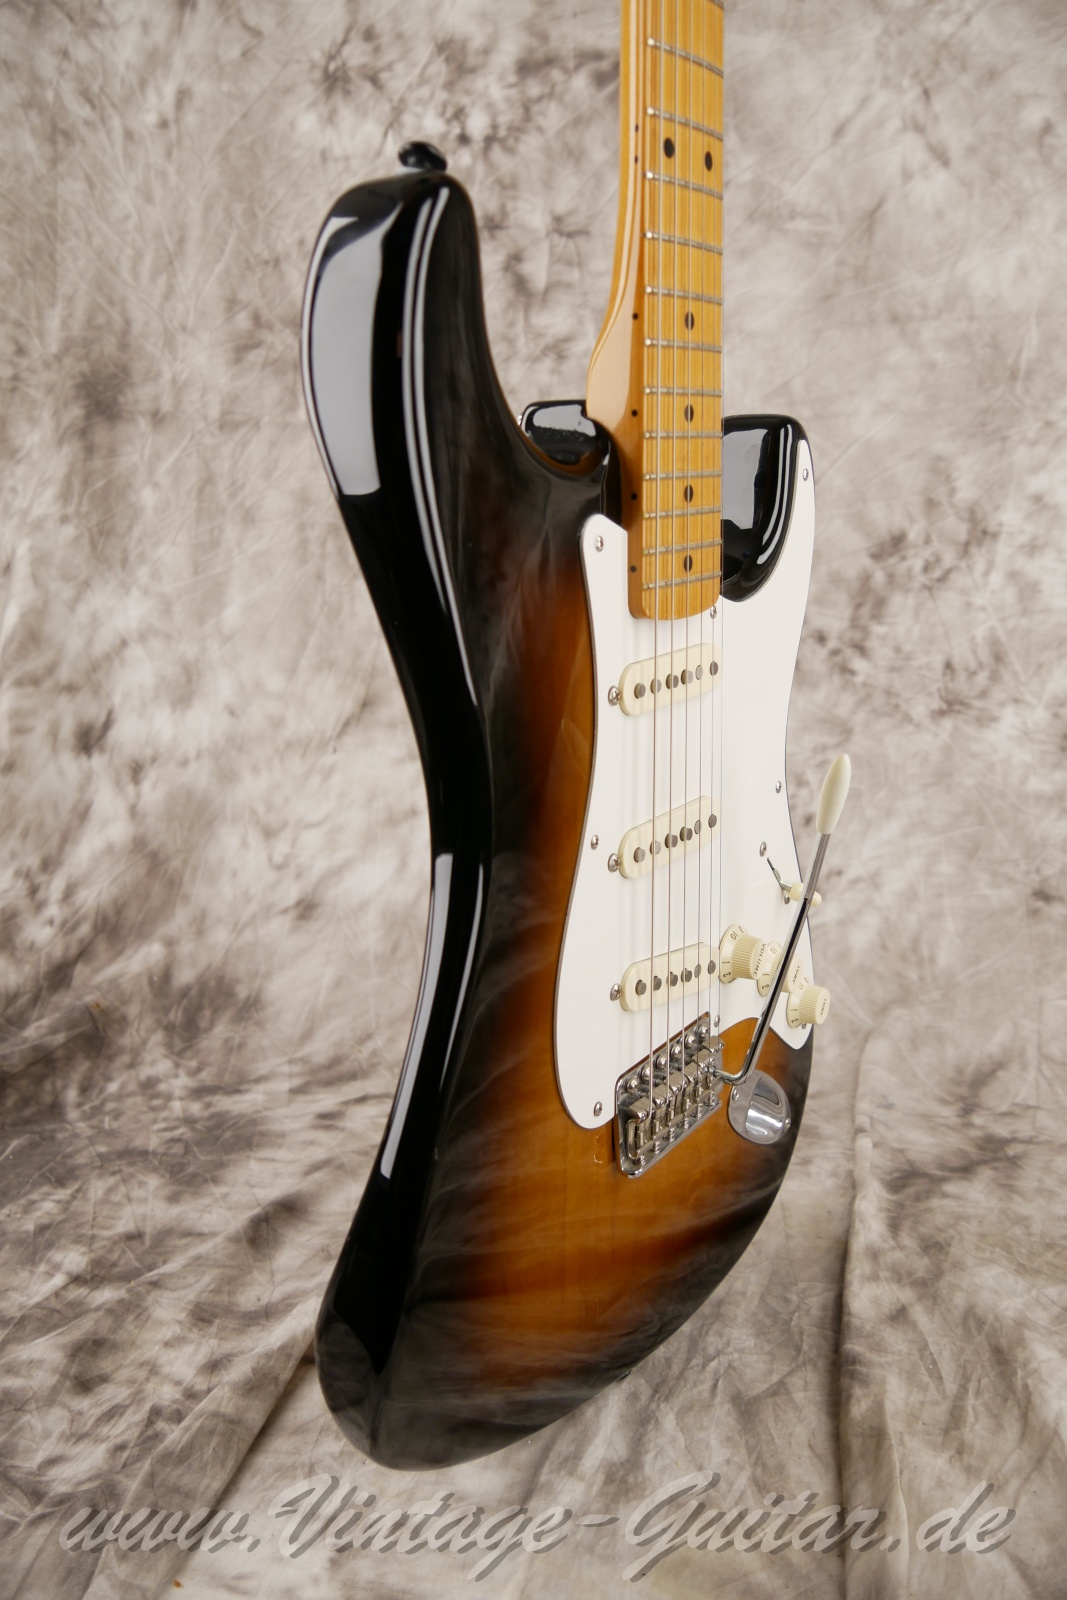 Fener-Stratocaster-Classic-player-series-50s-2007-sunburst-009.jpg